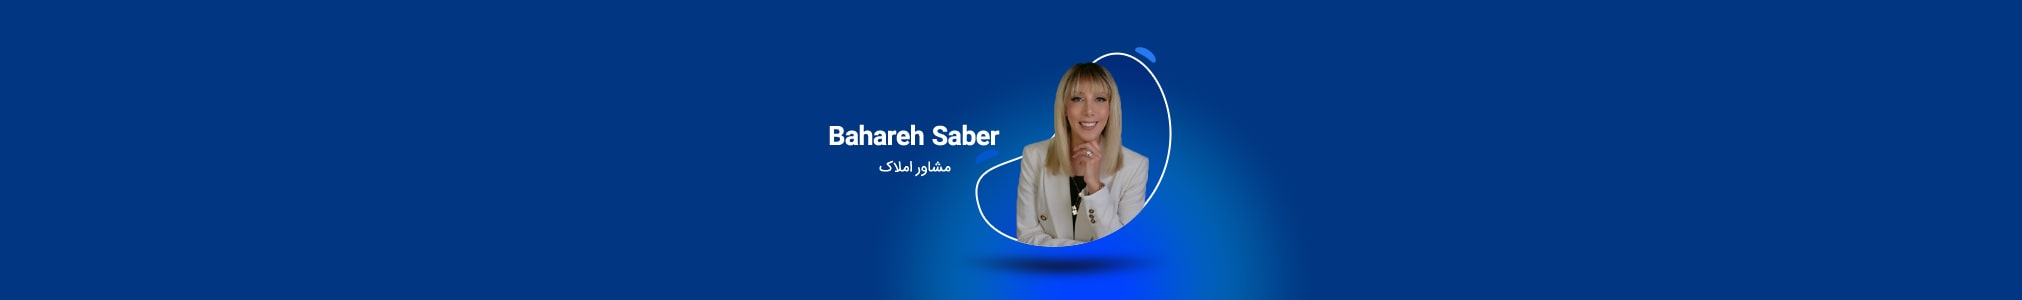 Bahareh Saber